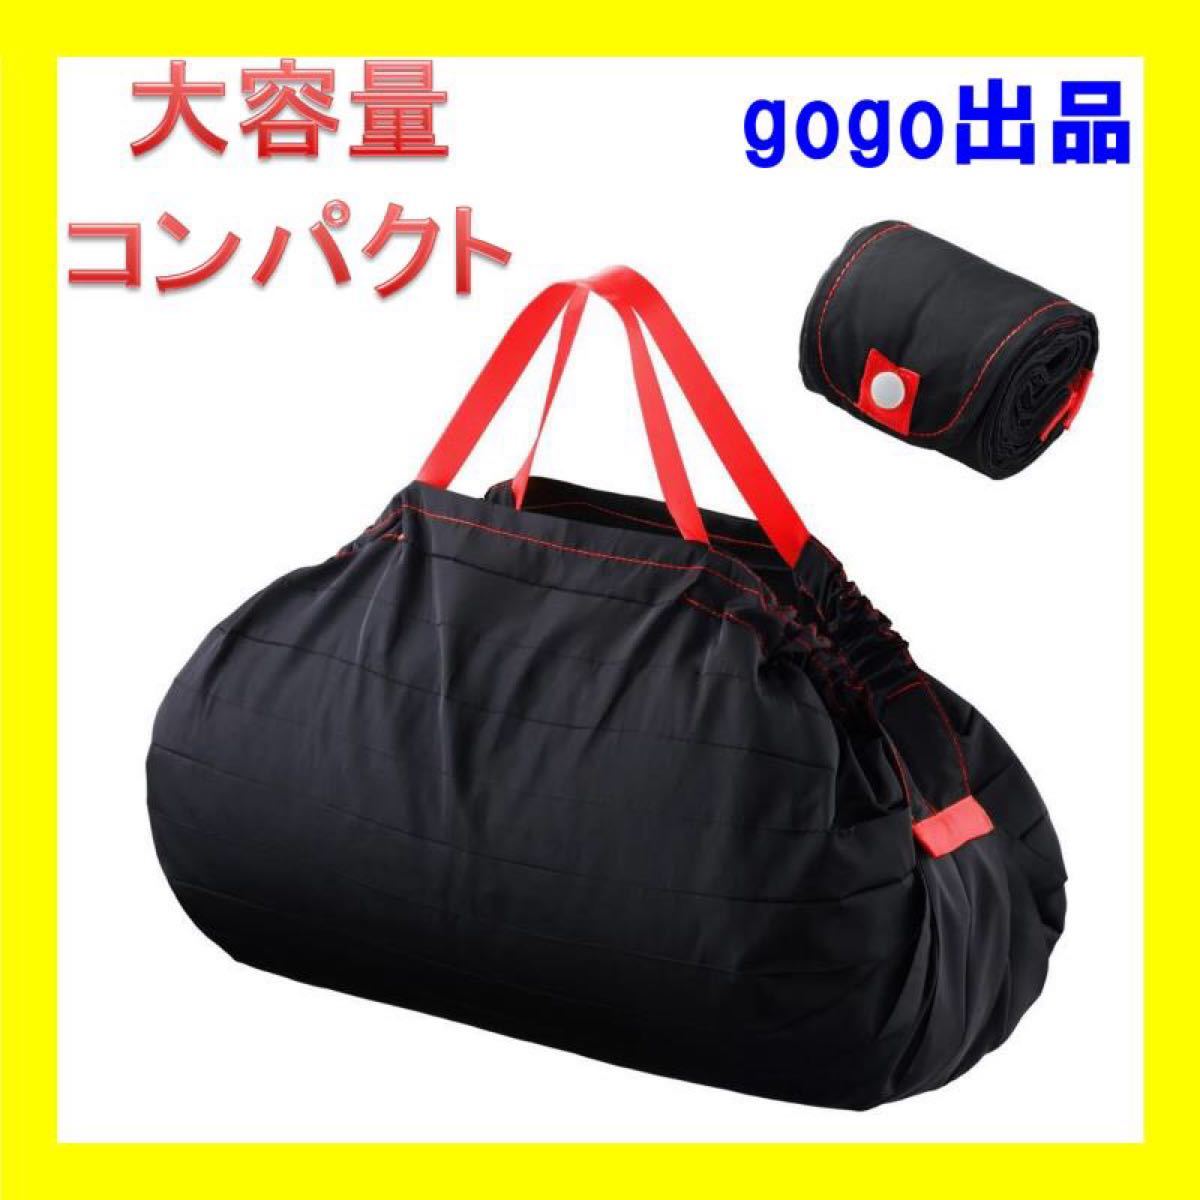 新品 エコバッグ 折りたたみ 買い物バッグ 大容量 コンパクト 軽量 防水